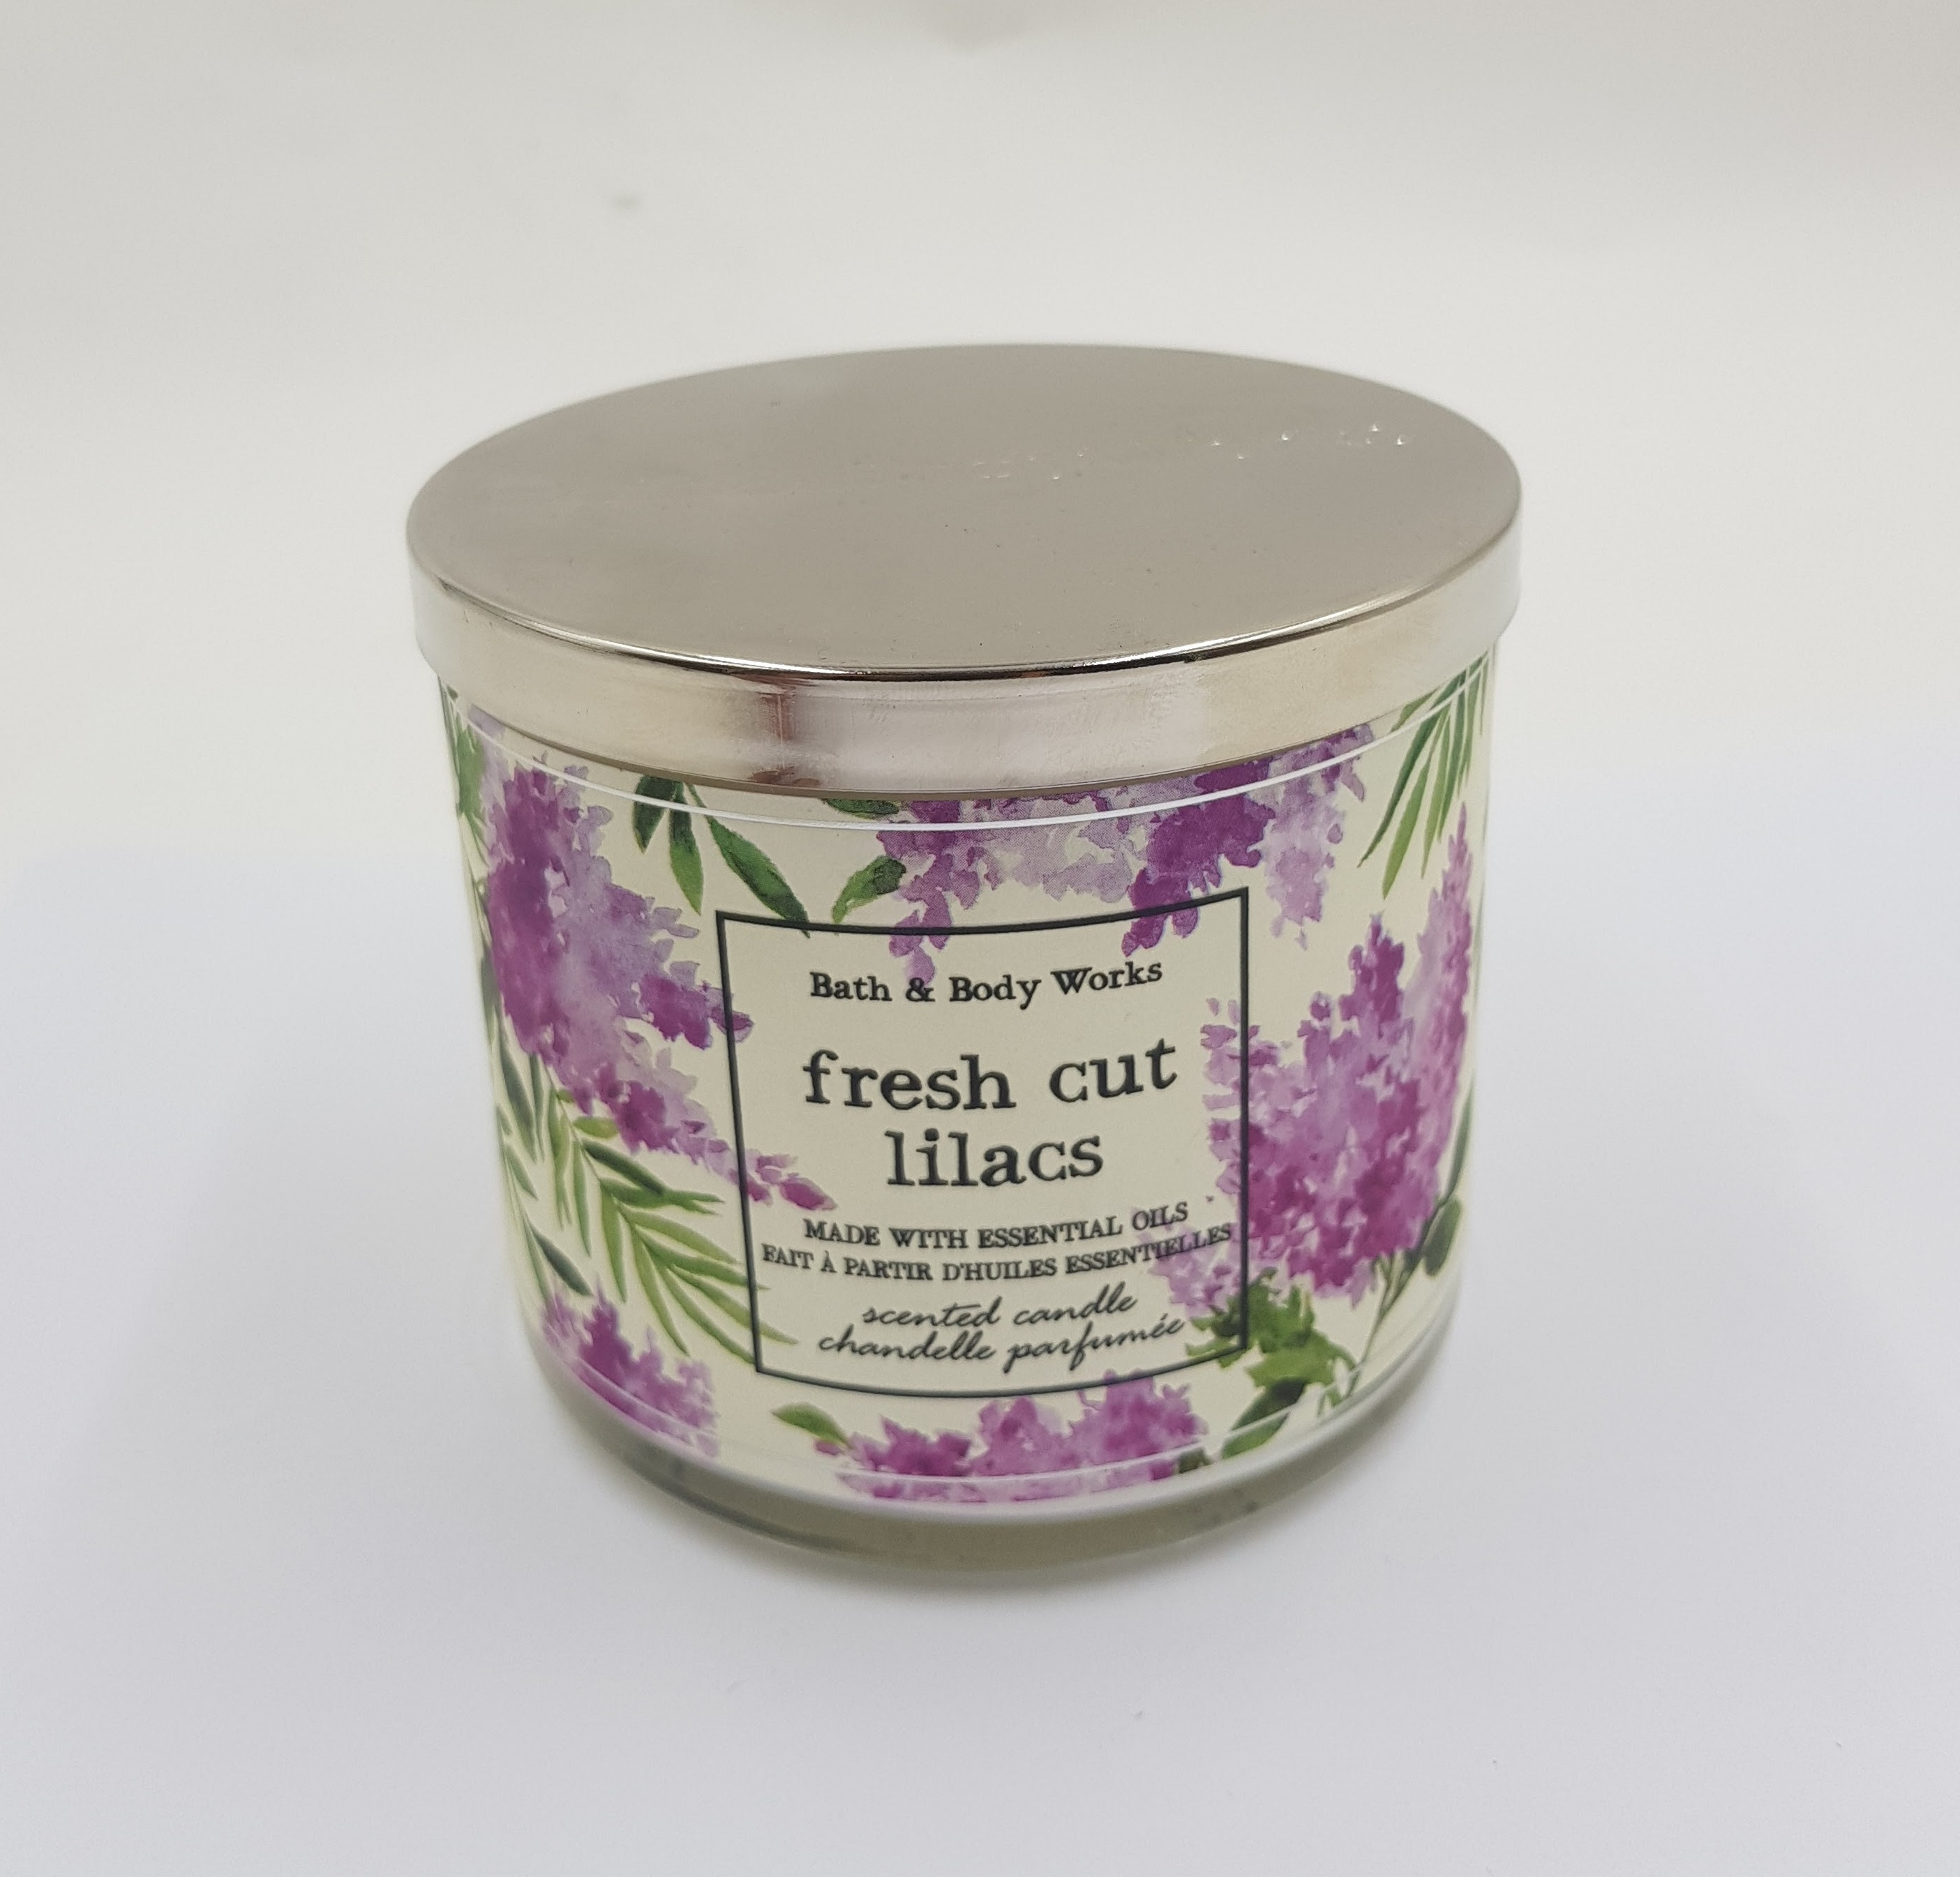 Bath & Body Work Fresh cut lilacs (411g) (Cargo)